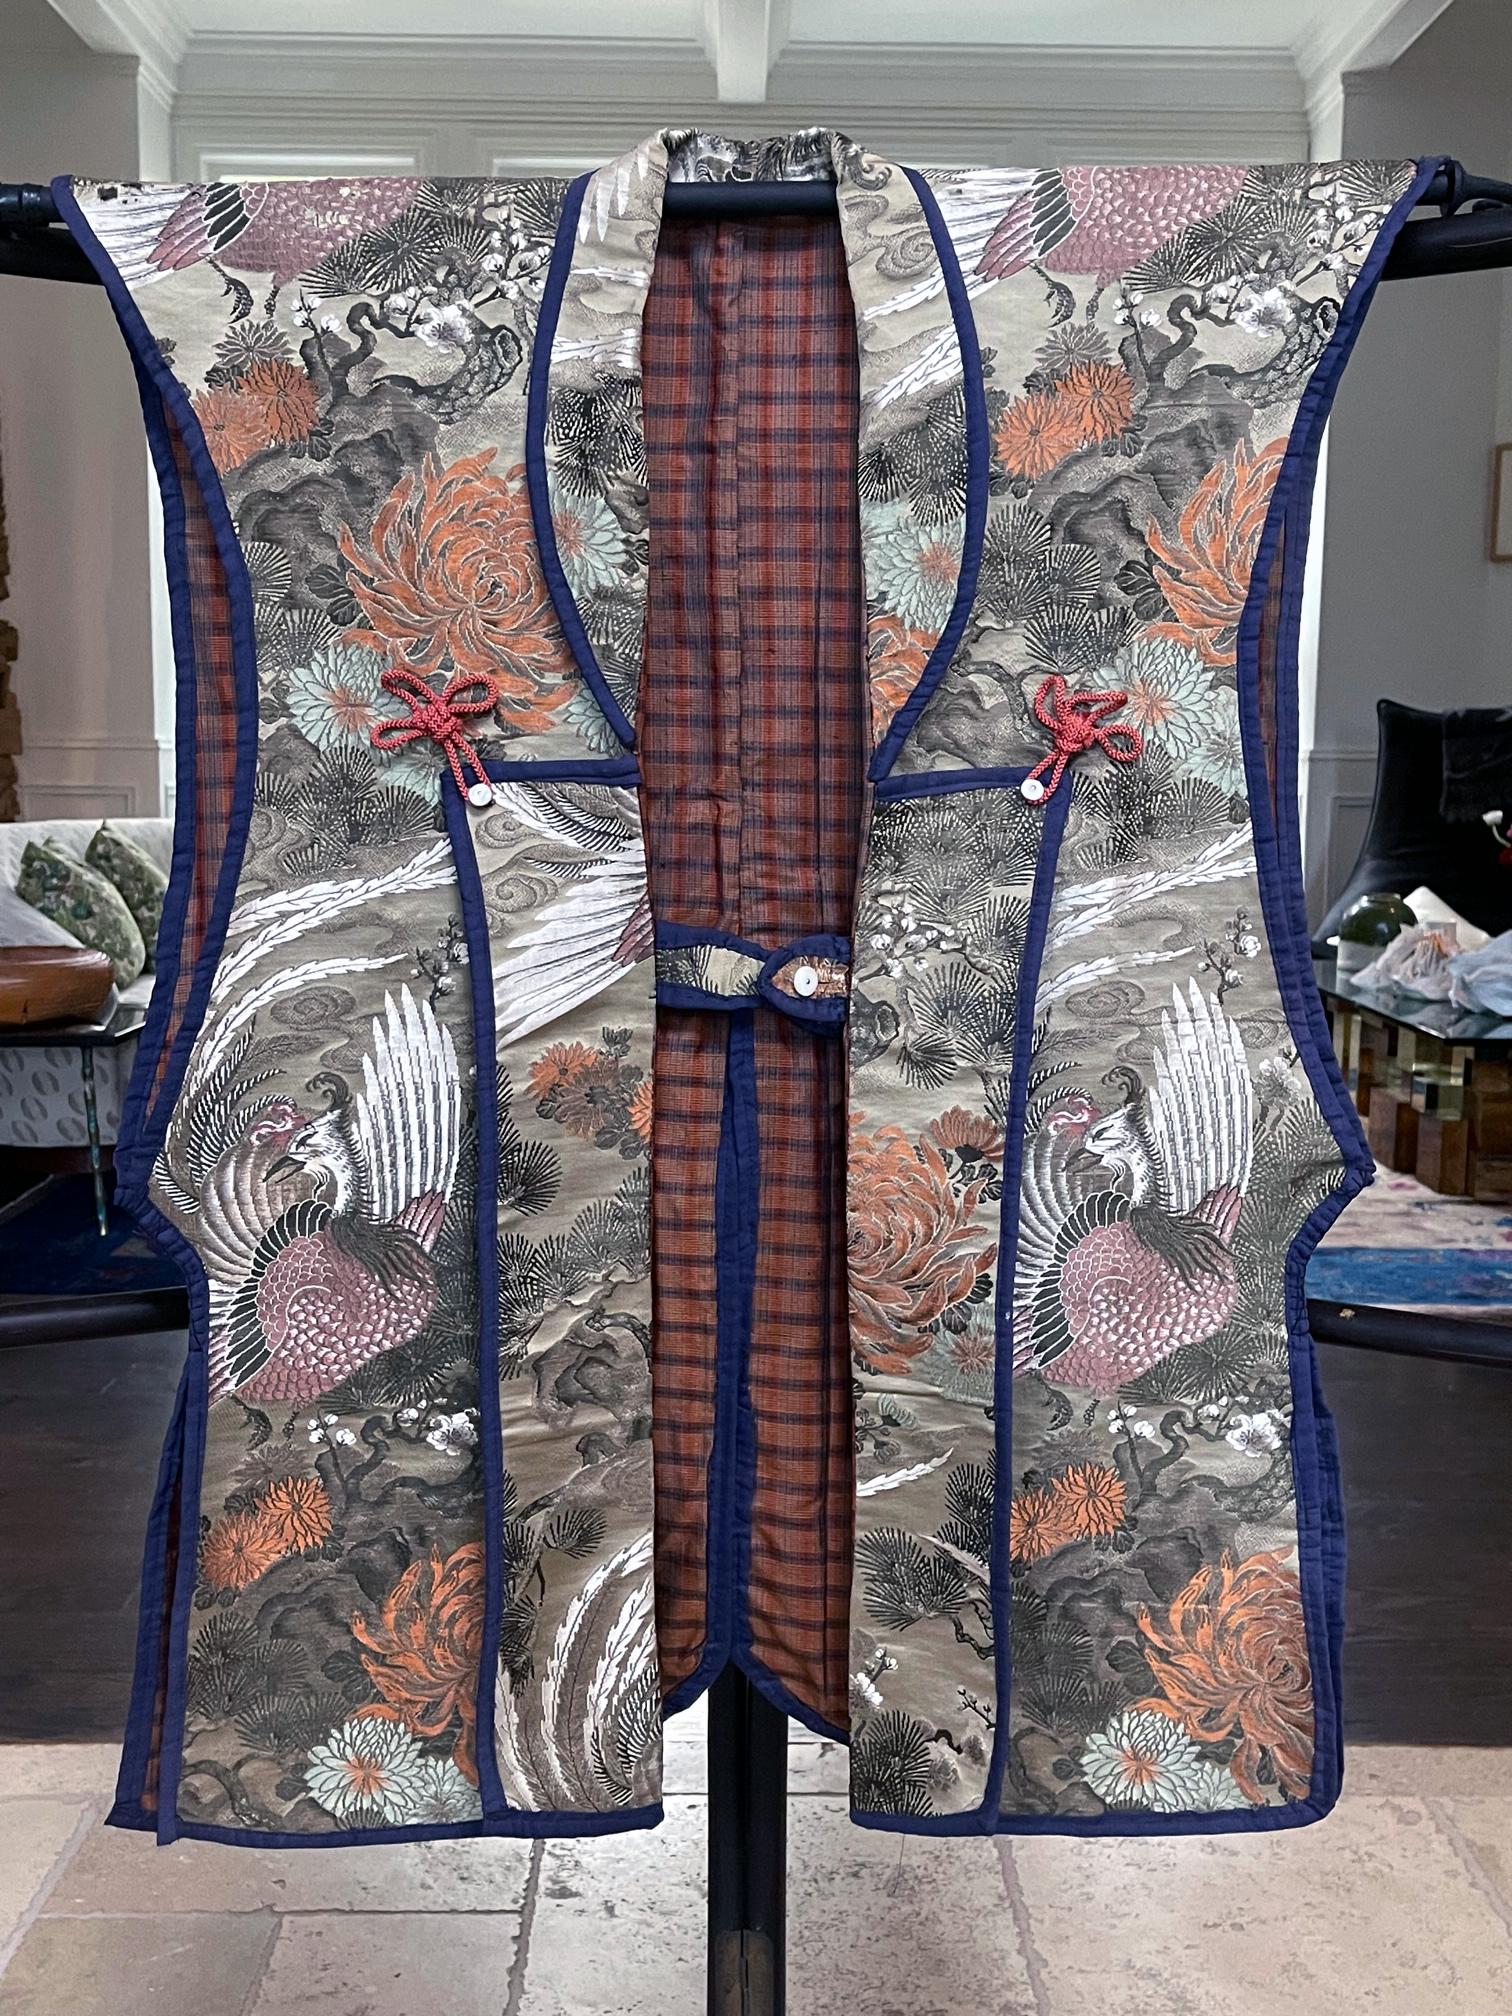 Die ärmellose japanische Jacke Jinbaori ist vollständig aus üppig gewebtem Brokat (Kinran) gefertigt. Im 16. Jahrhundert, als die Kriegsführung im feudalen Japan üblich war, wurde diese Art von lockerer Jacke häufig von den Samurai-Kriegern